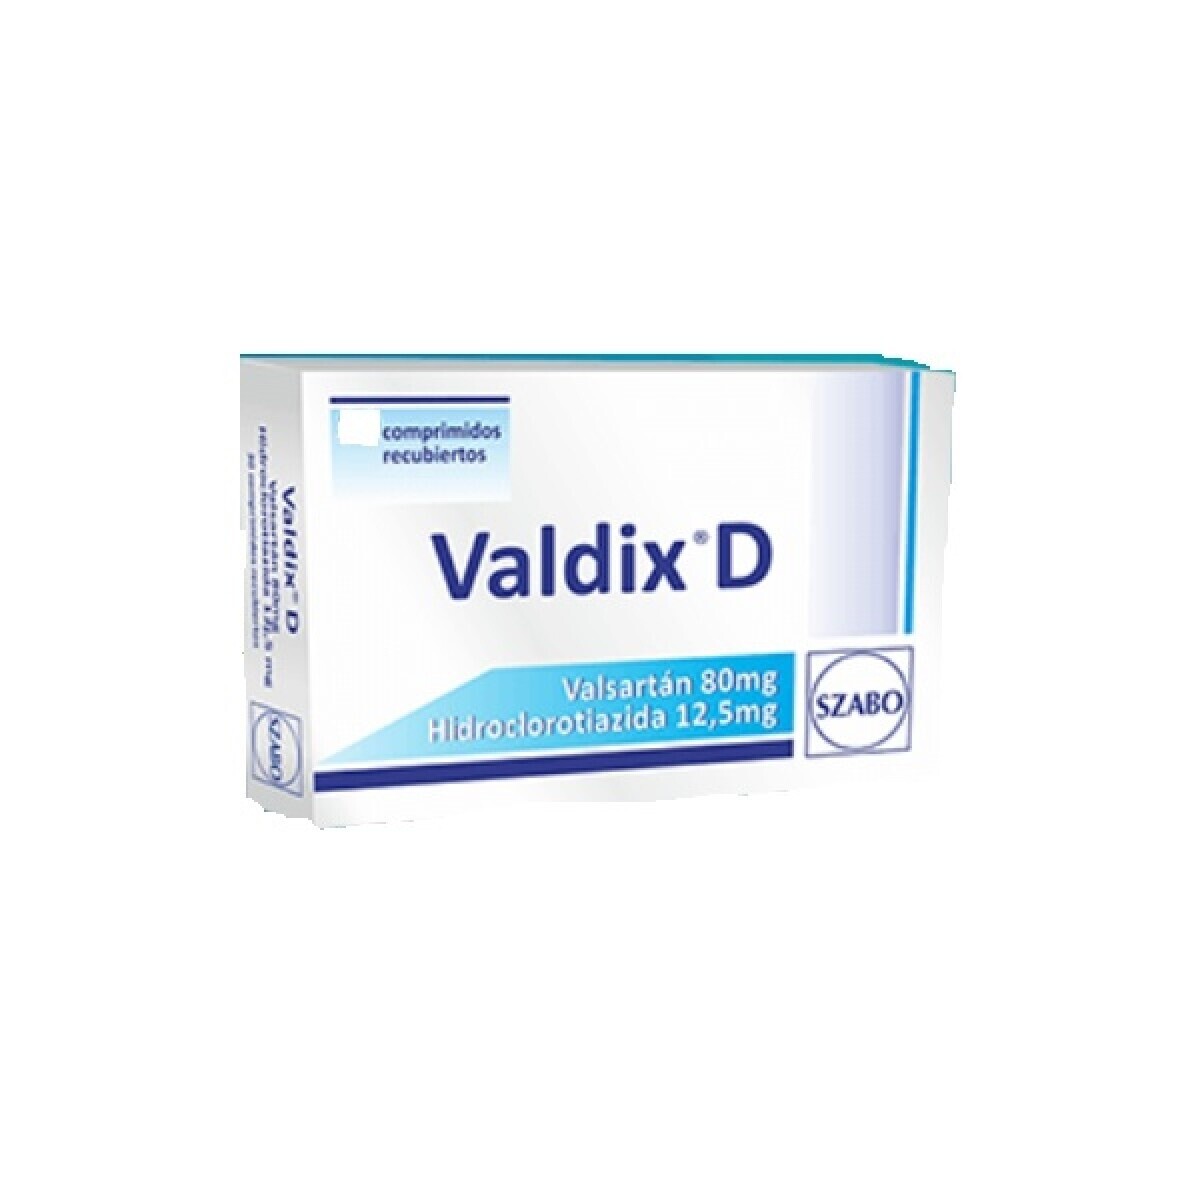 Valdix D x 60 COM 